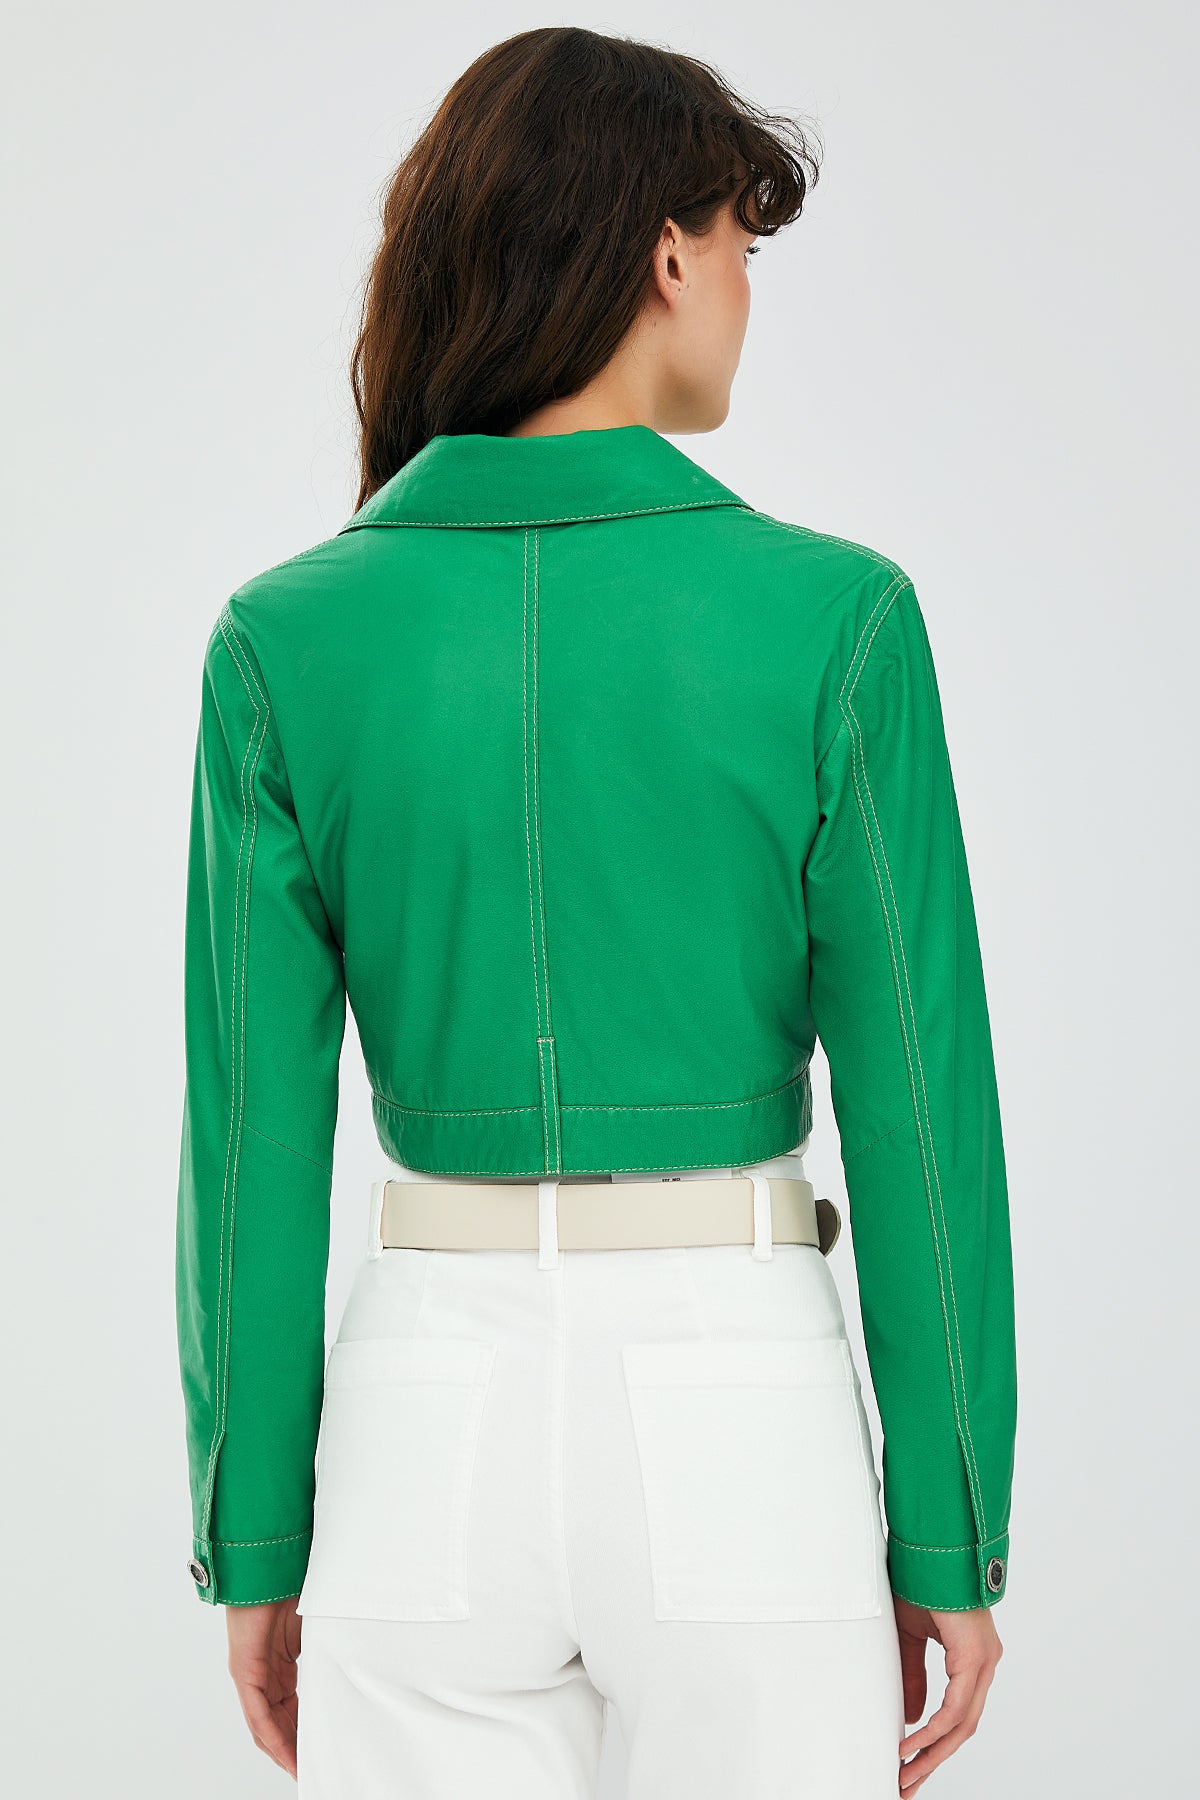 Mona Kadın Yeşil Kısa Deri Ceket